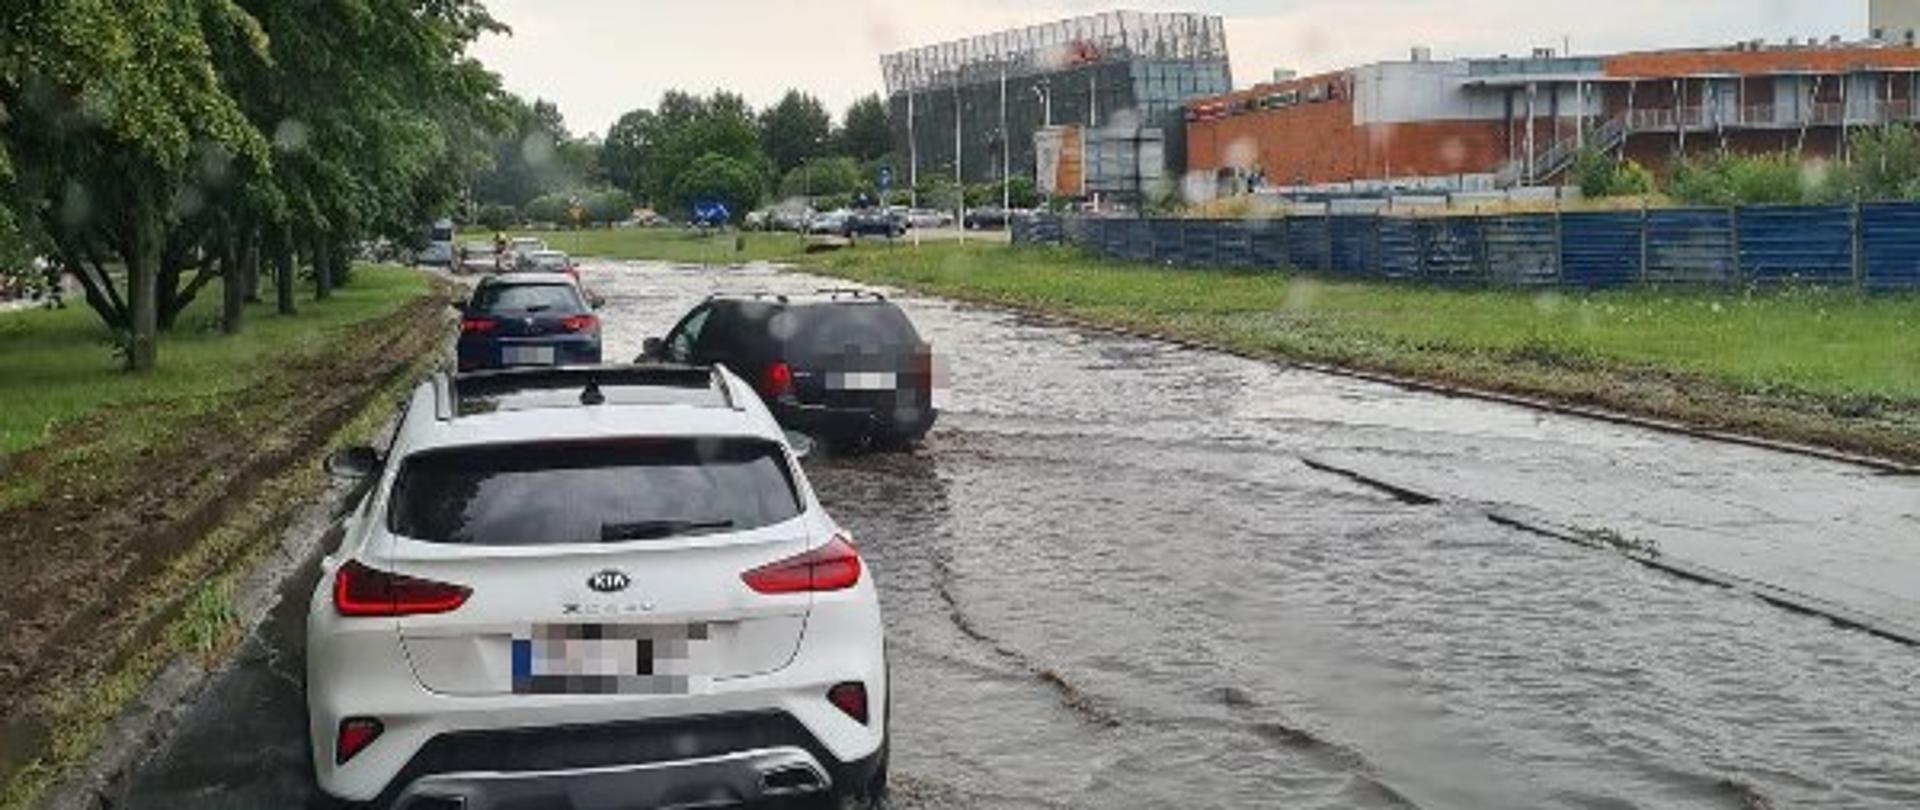 Zalane ulice miasta Koszalin. Samochody na zalanej drodze.